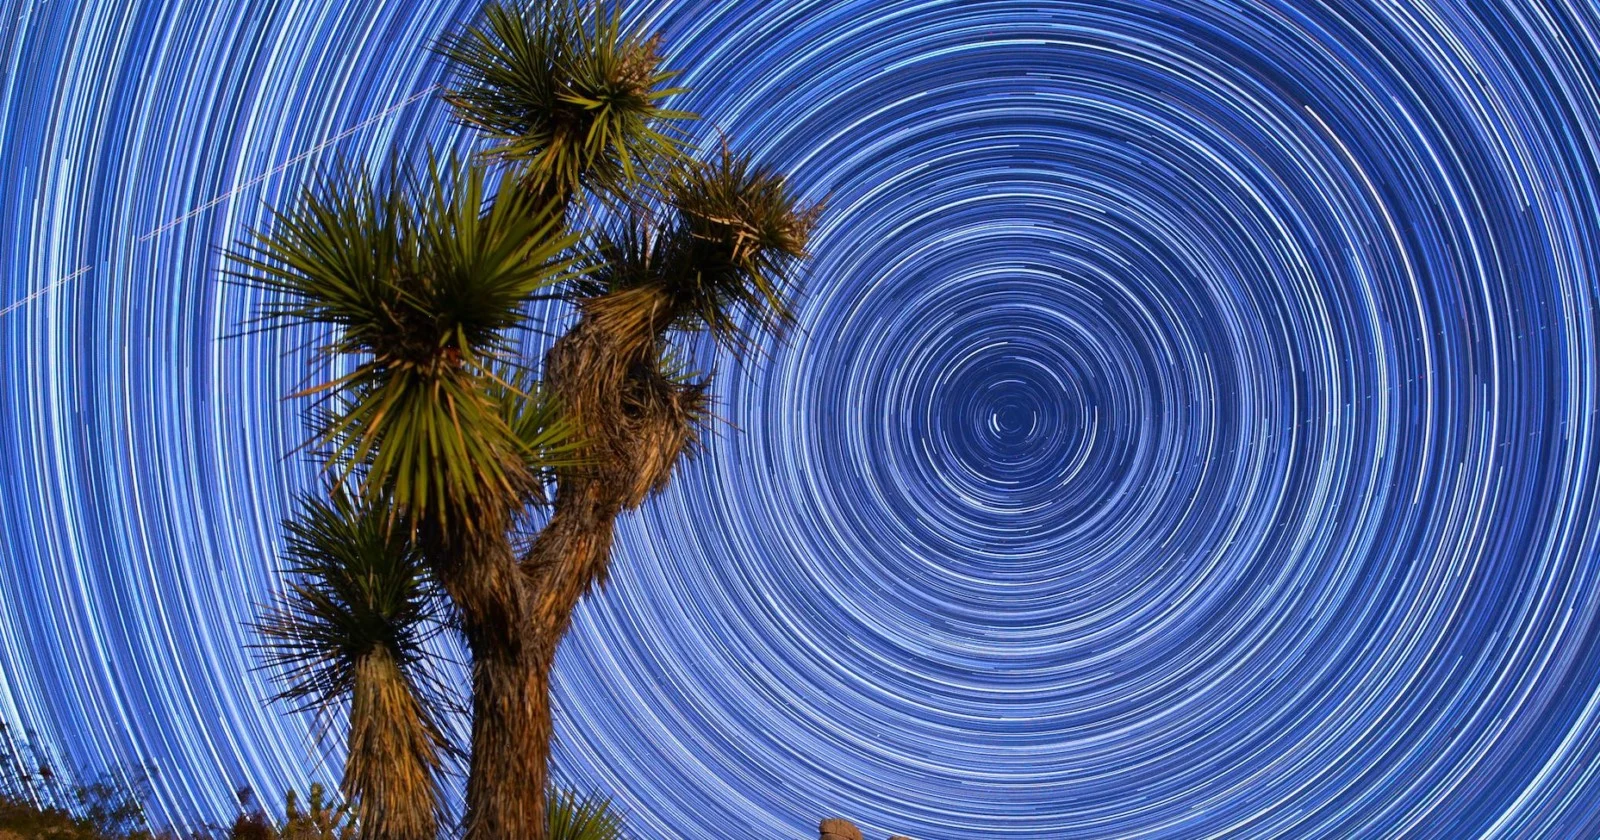 Mojave Çölü'nde yıldızlar ve dolunay eşliğinde muazzam bir timelapse! SPACEX